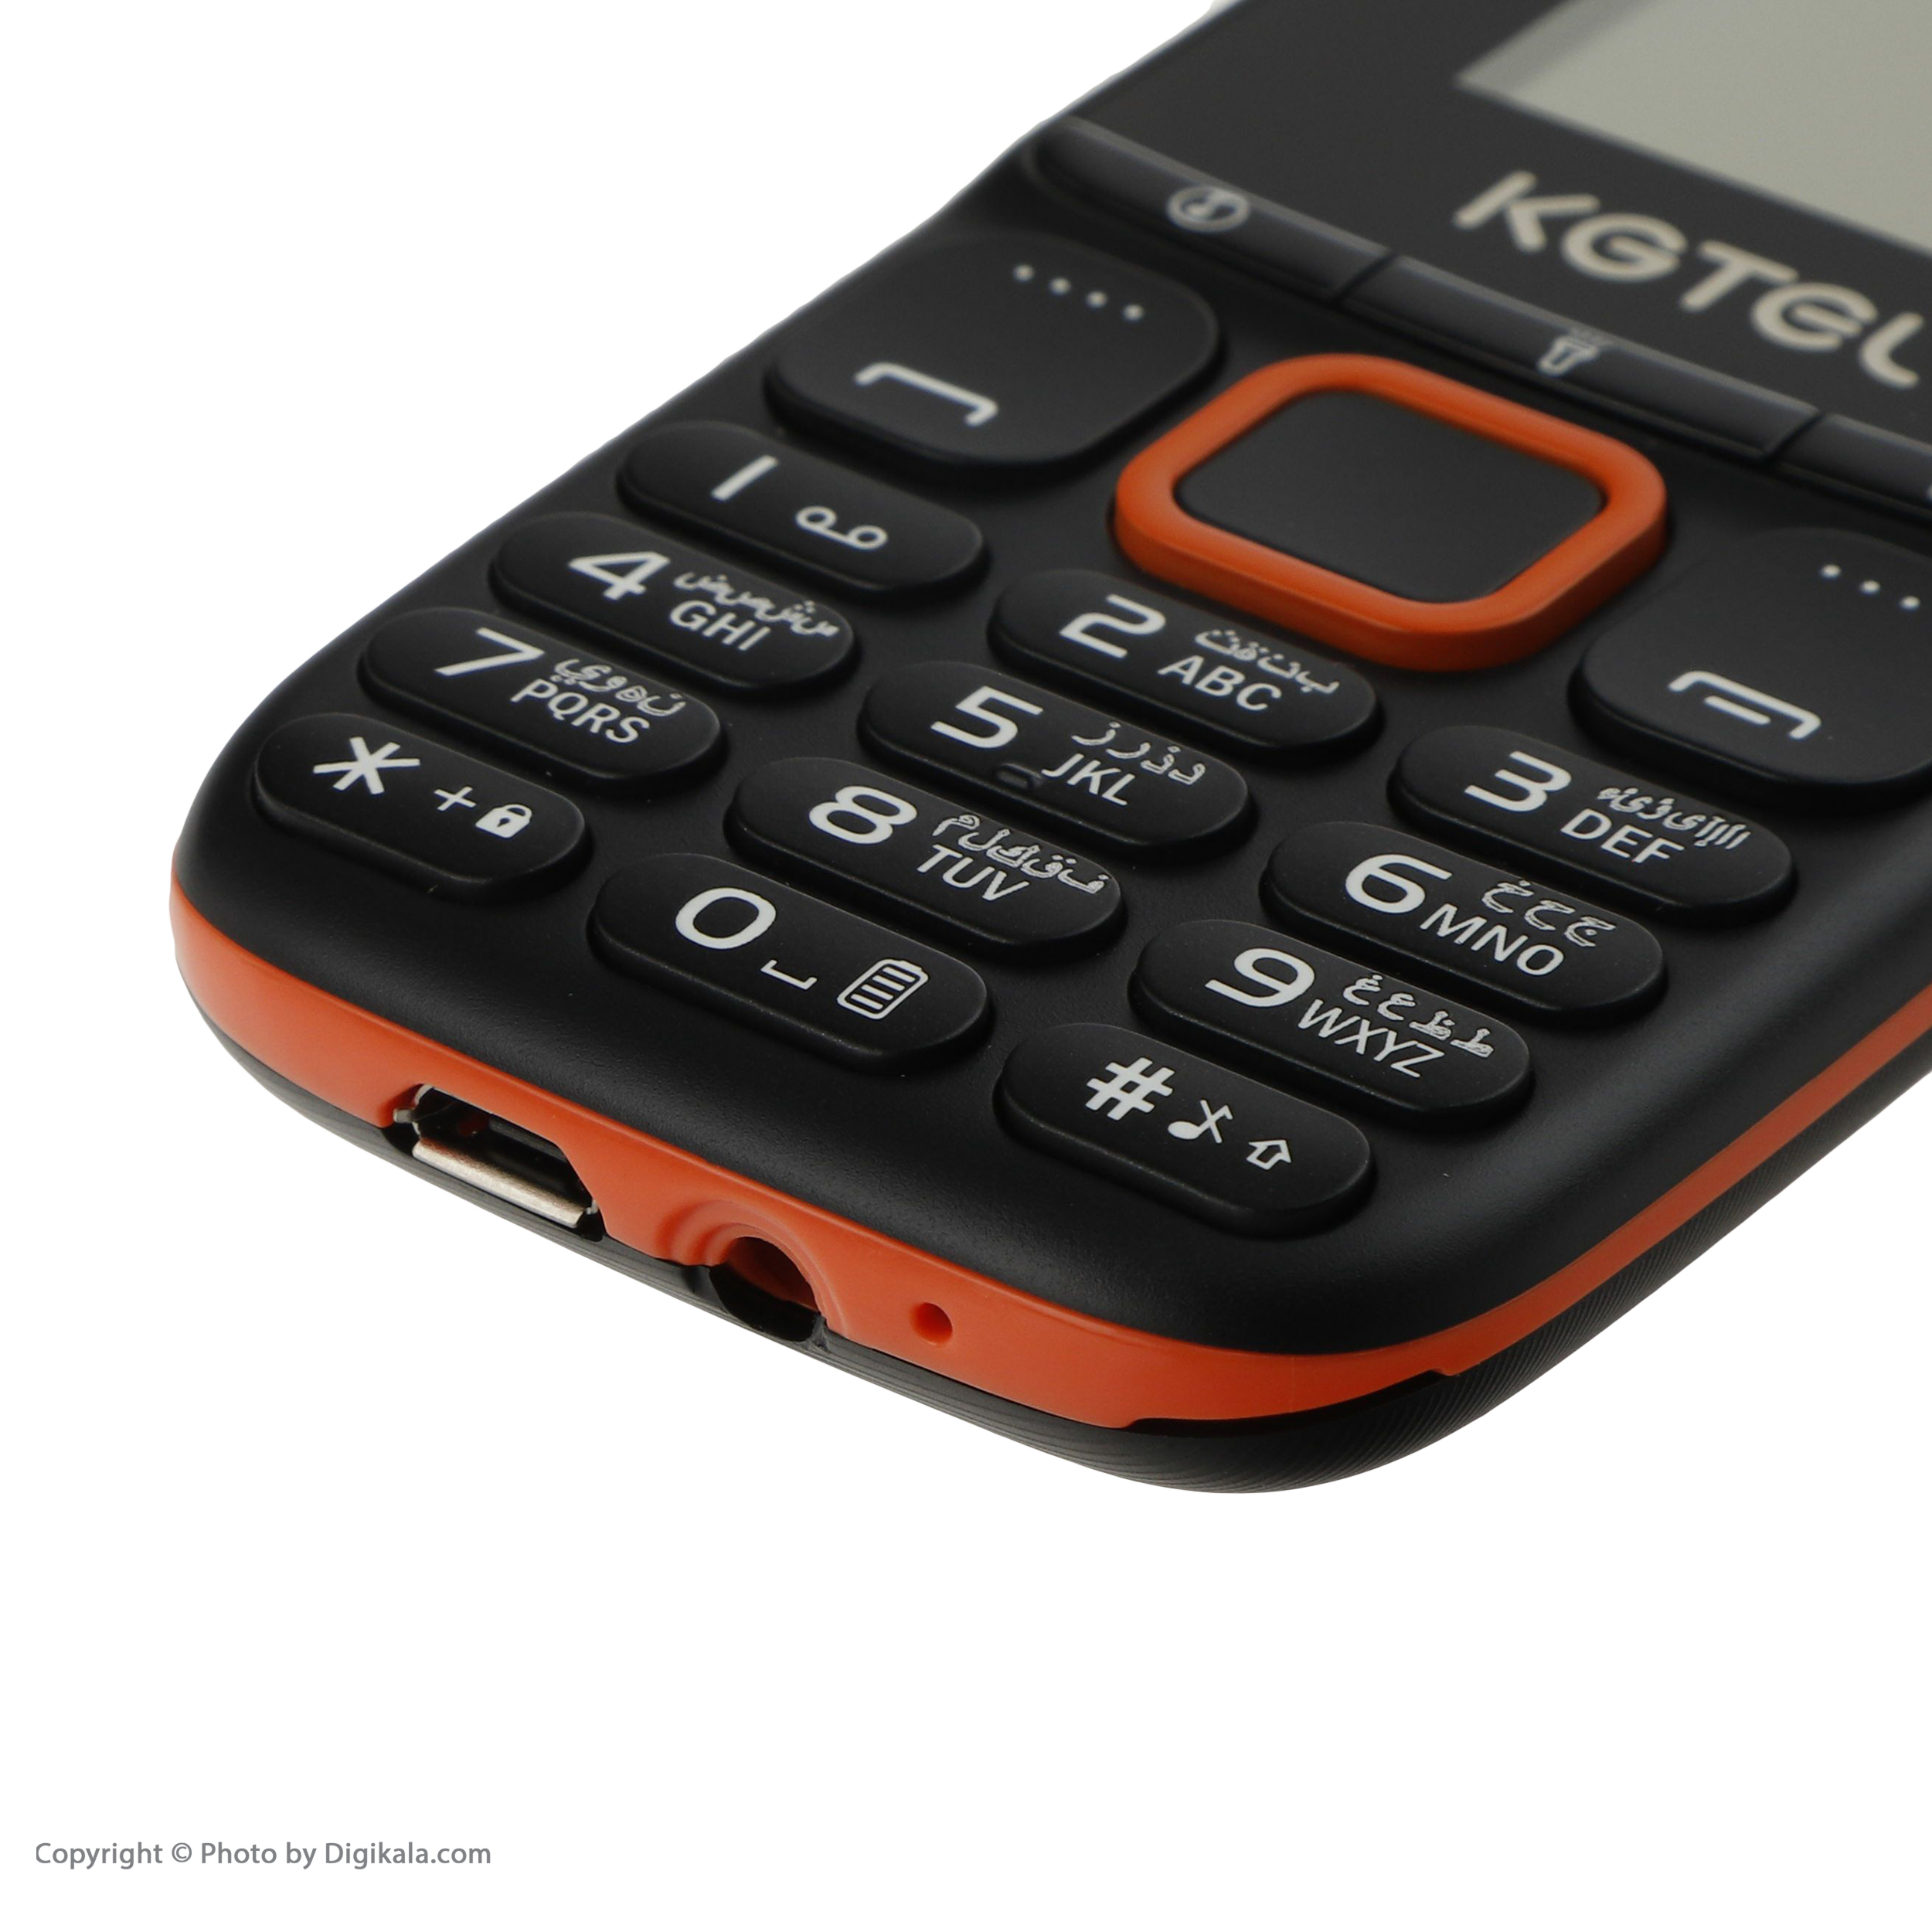 قیمت و مشخصات گوشی موبایل کاجیتل مدل K2173 دو سیم کارت ظرفیت 32 مگابایت و رم32 مگابایت - زیراکو